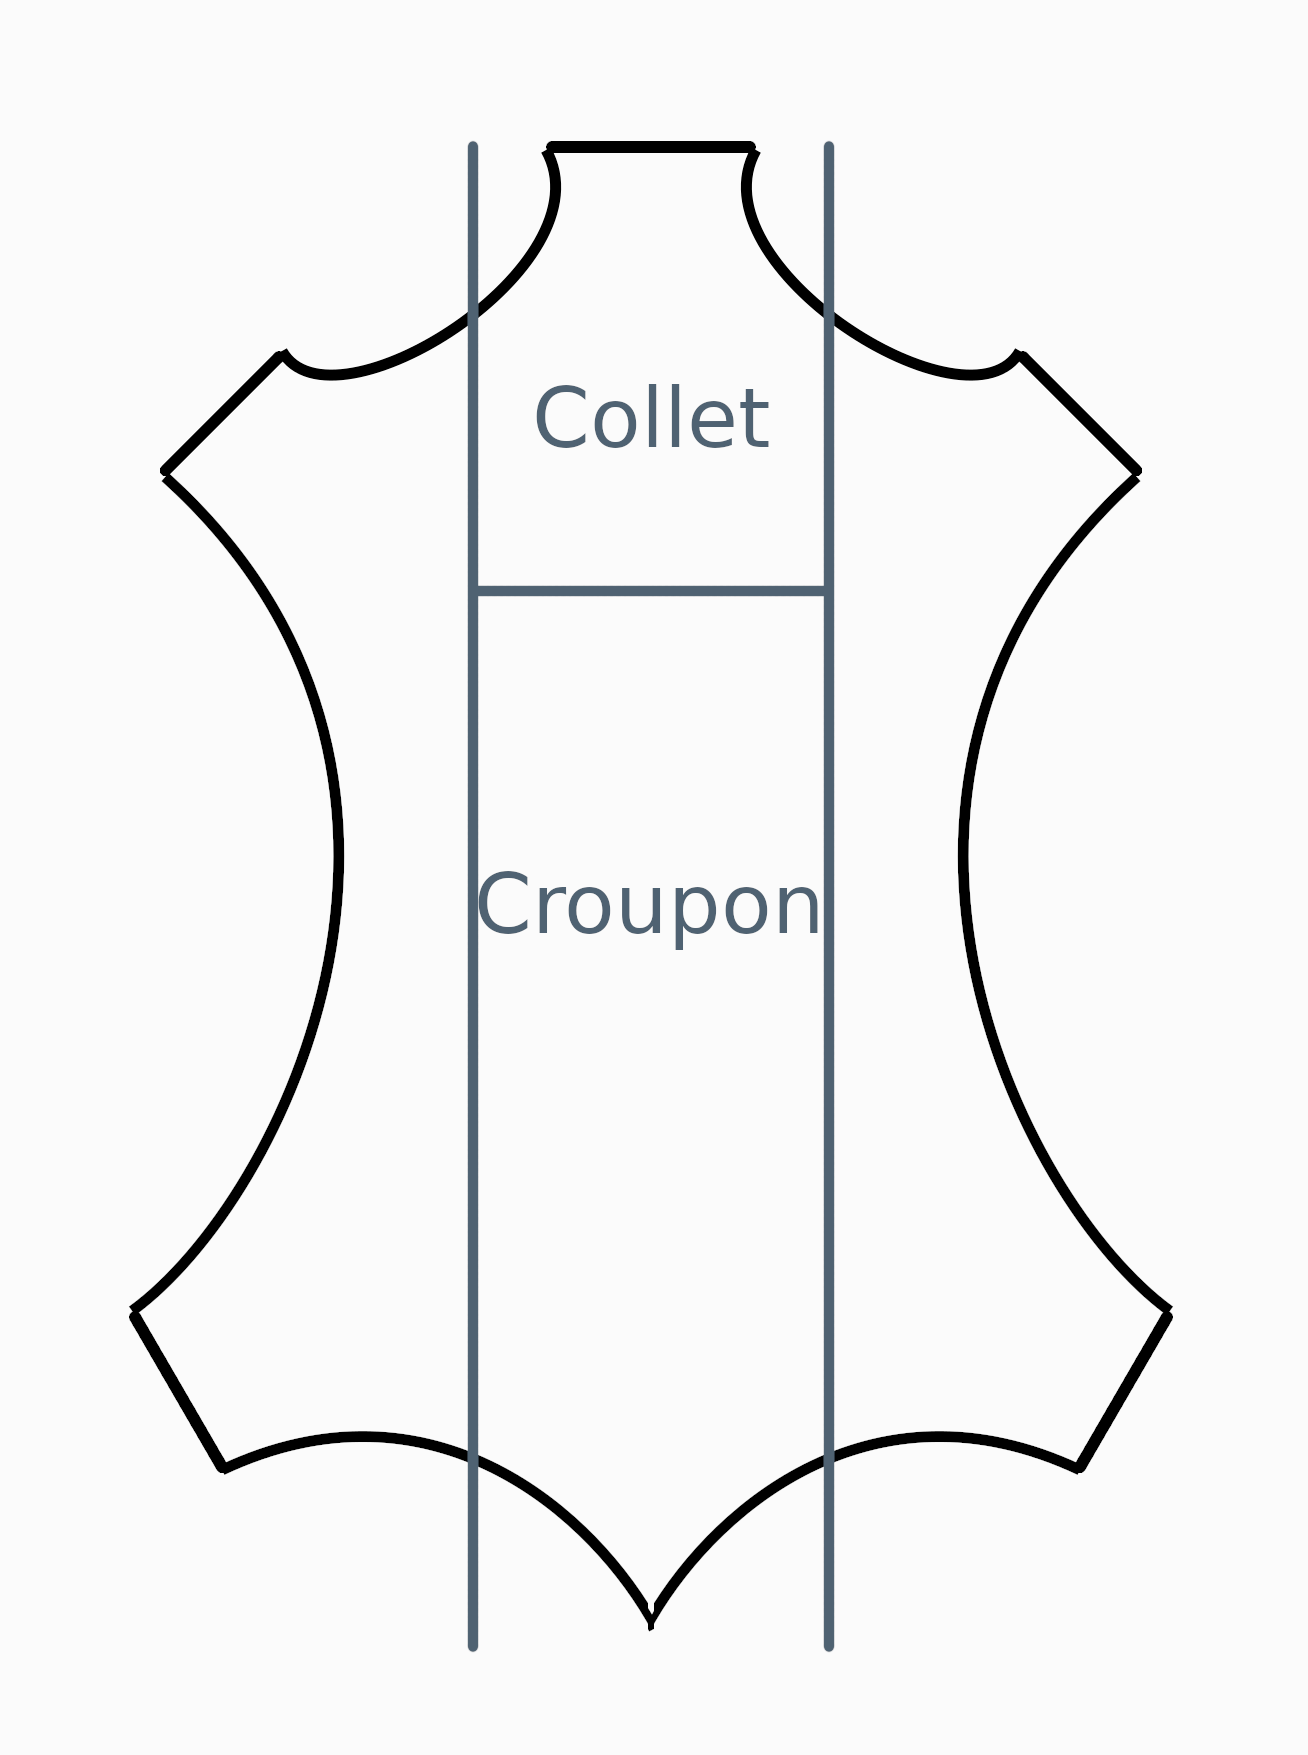 schéma pour montrer où se situent le collet et le croupon sur un cuir